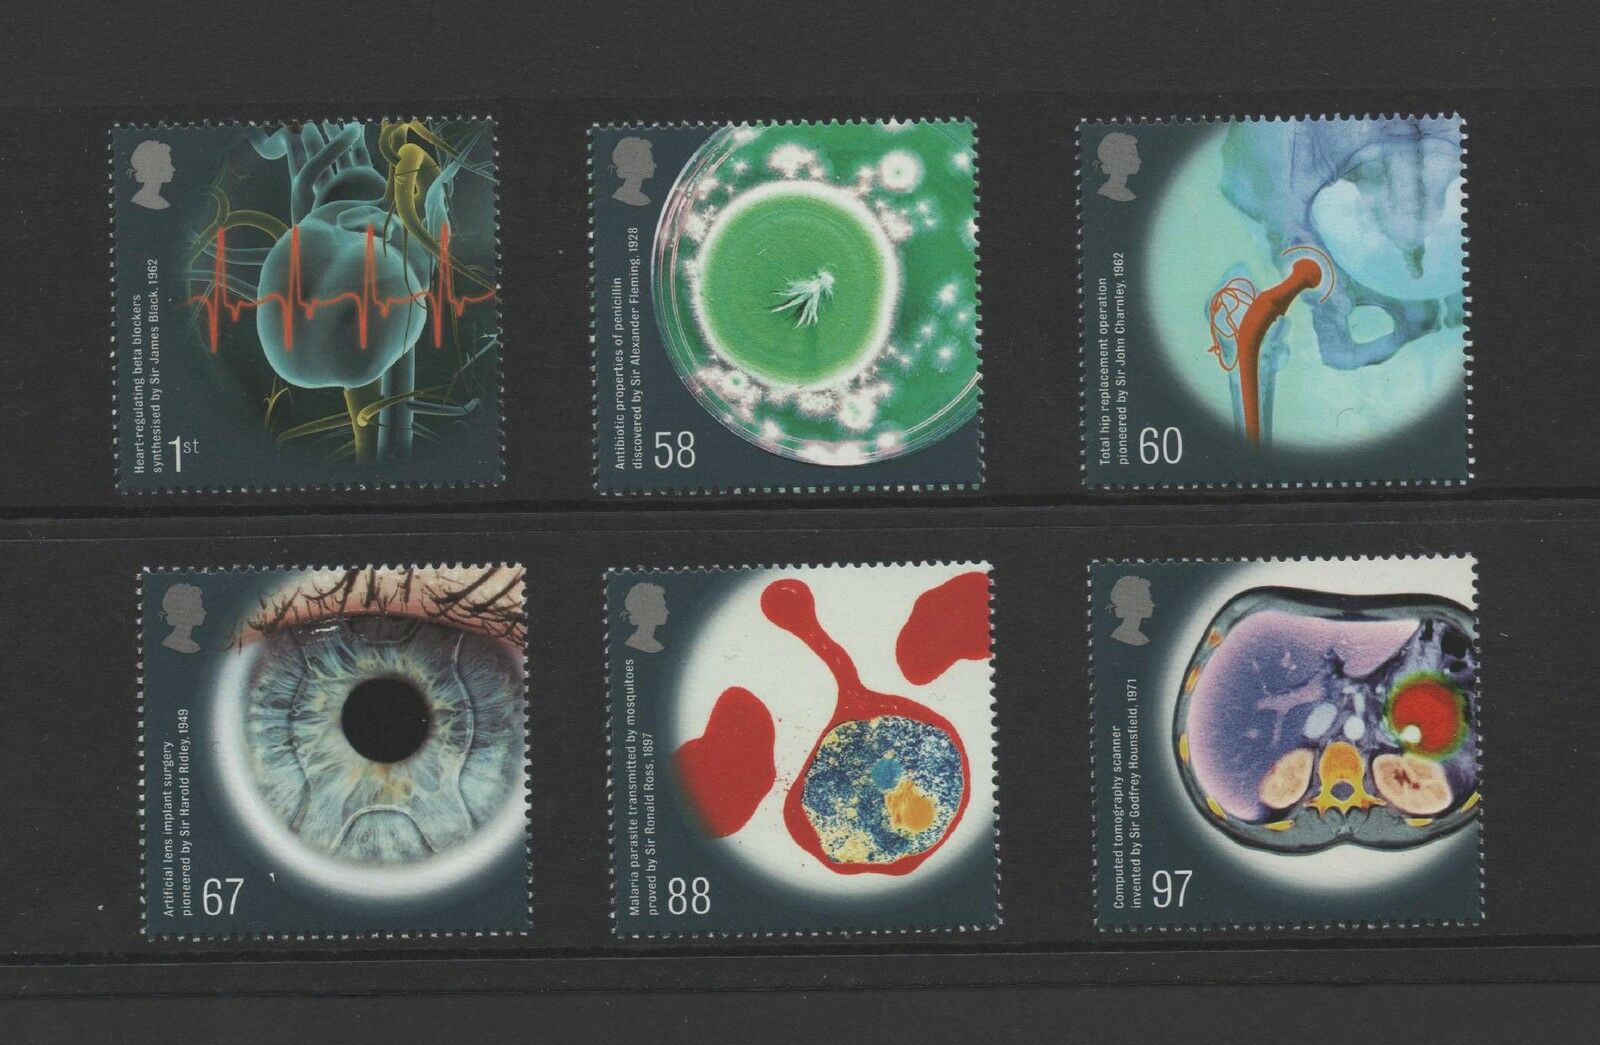 Gb 2010 Medical Breakthroughs Mint Stamp Set